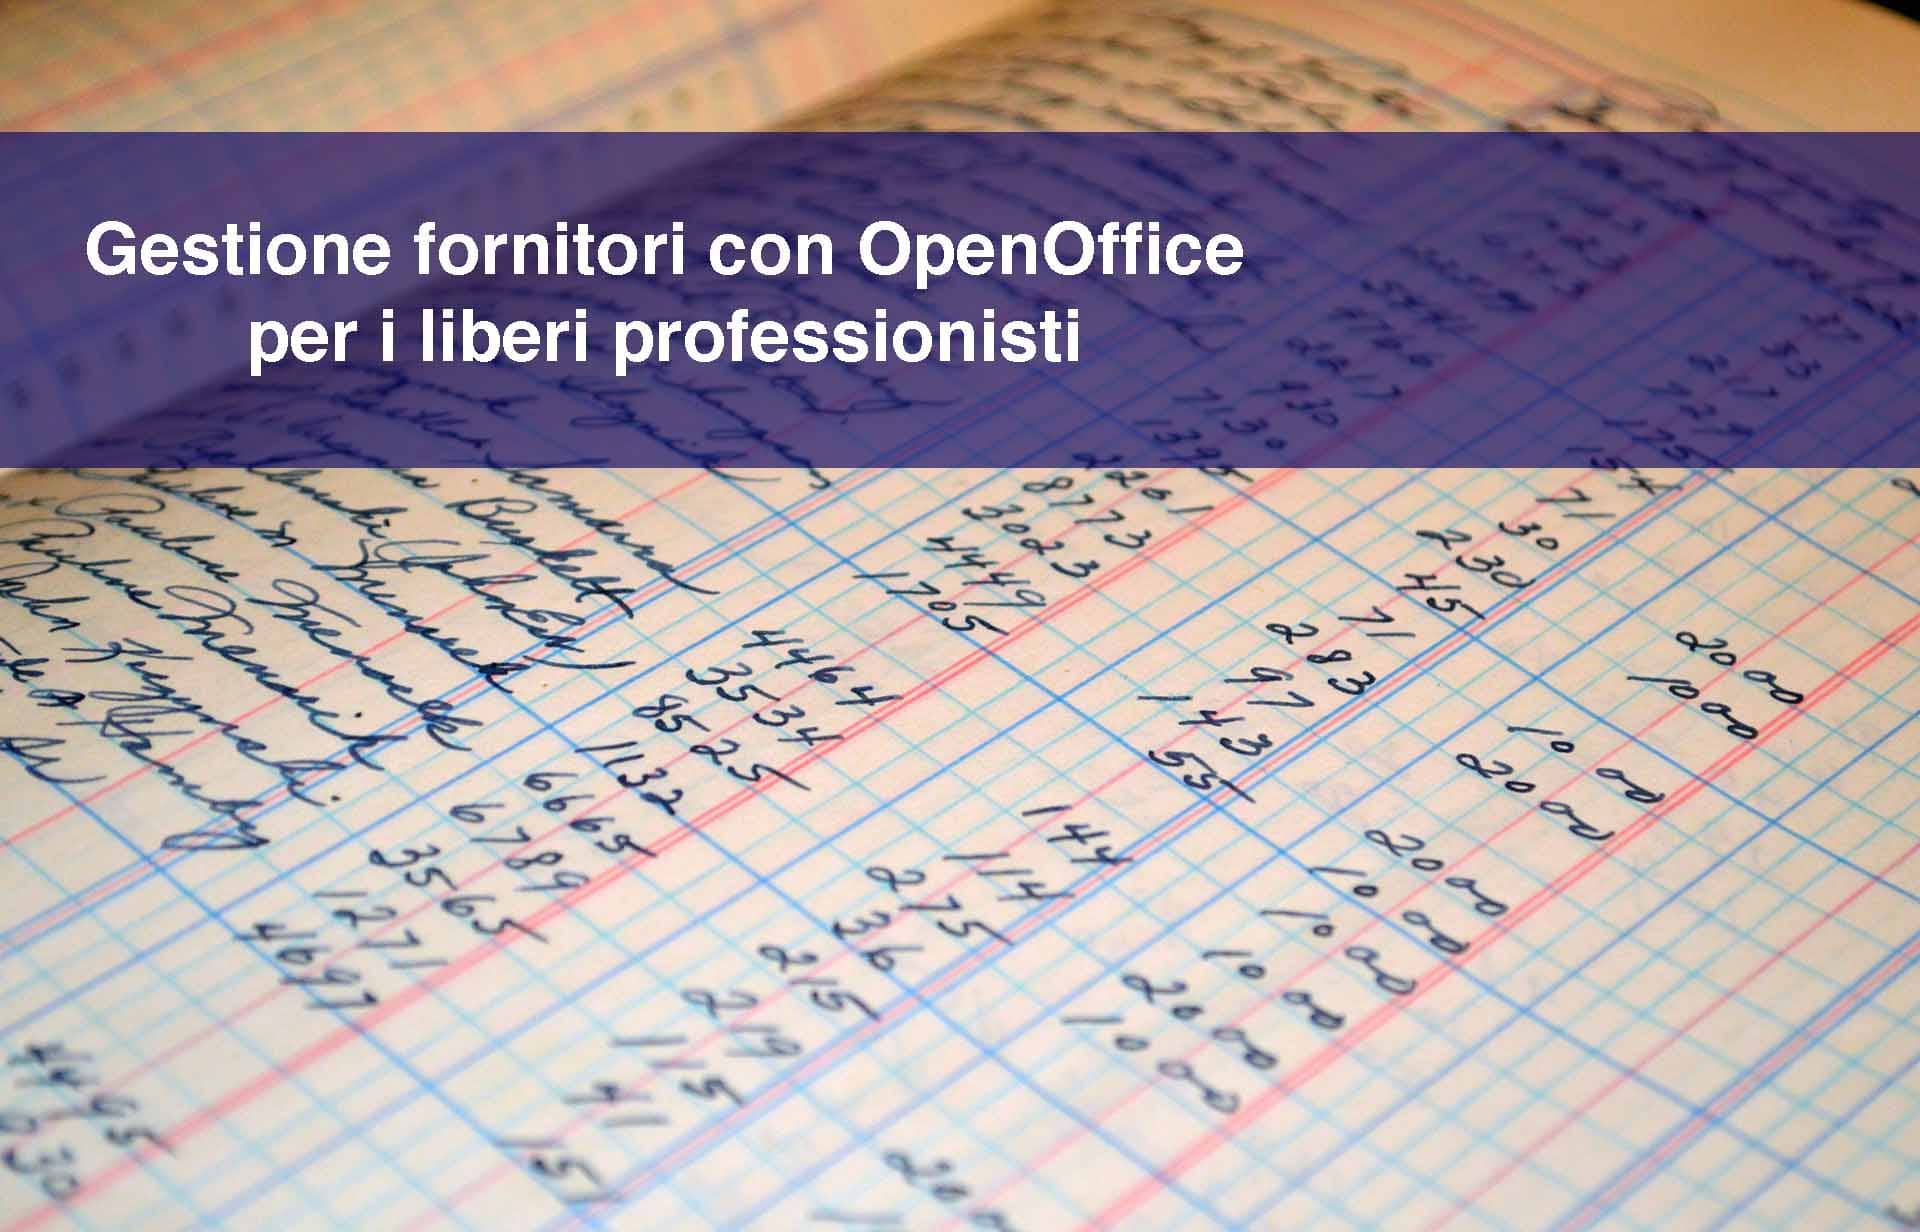 Gestione dei fornitori con OpenOffice: strumenti per liberi professionisti